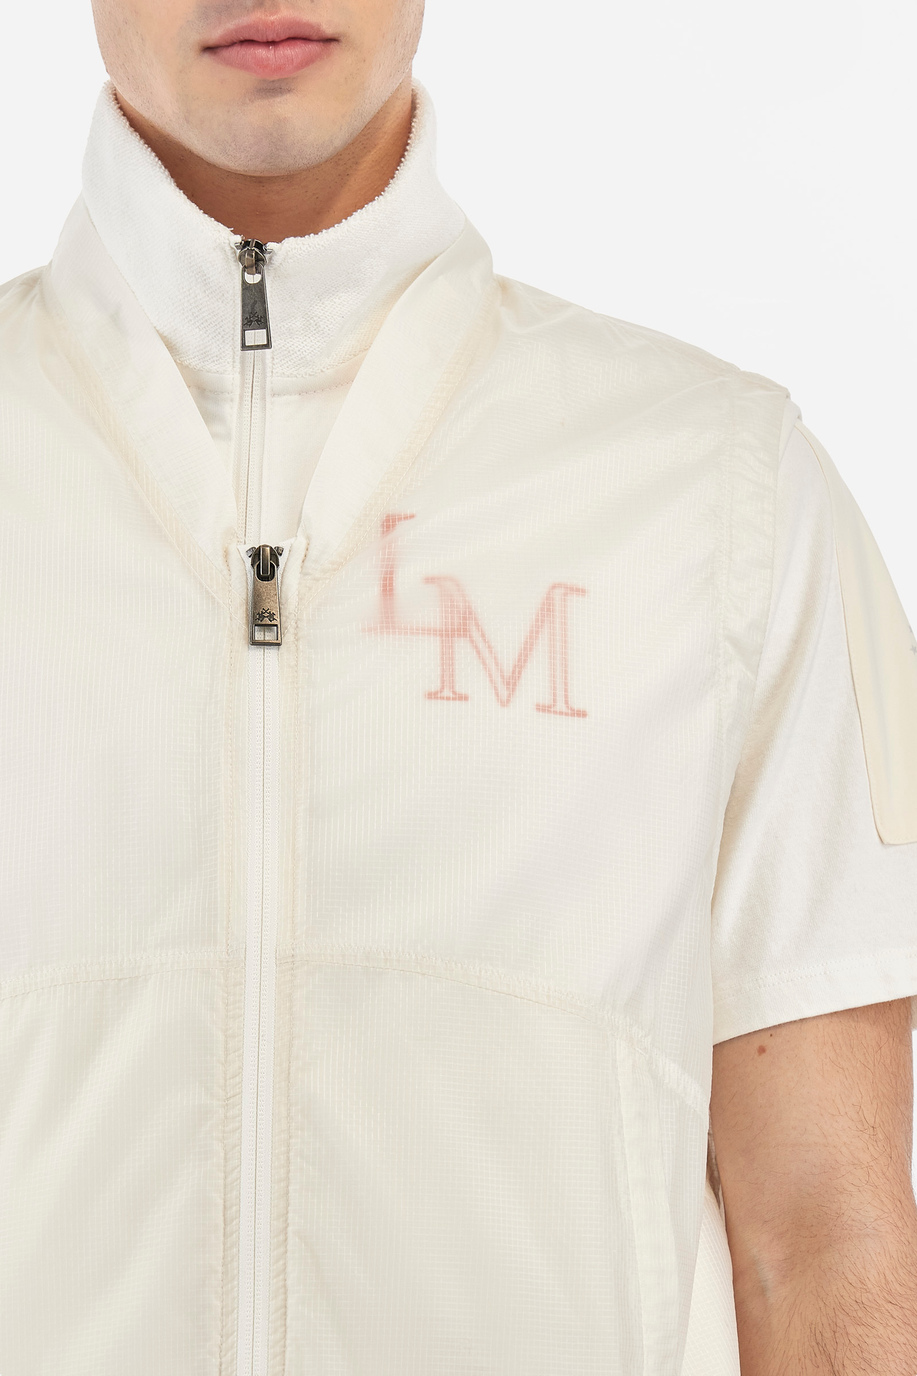 Men's vest with high collar and regular fit zip - Vermont - Gerard Loft X La Martina | La Martina - Official Online Shop